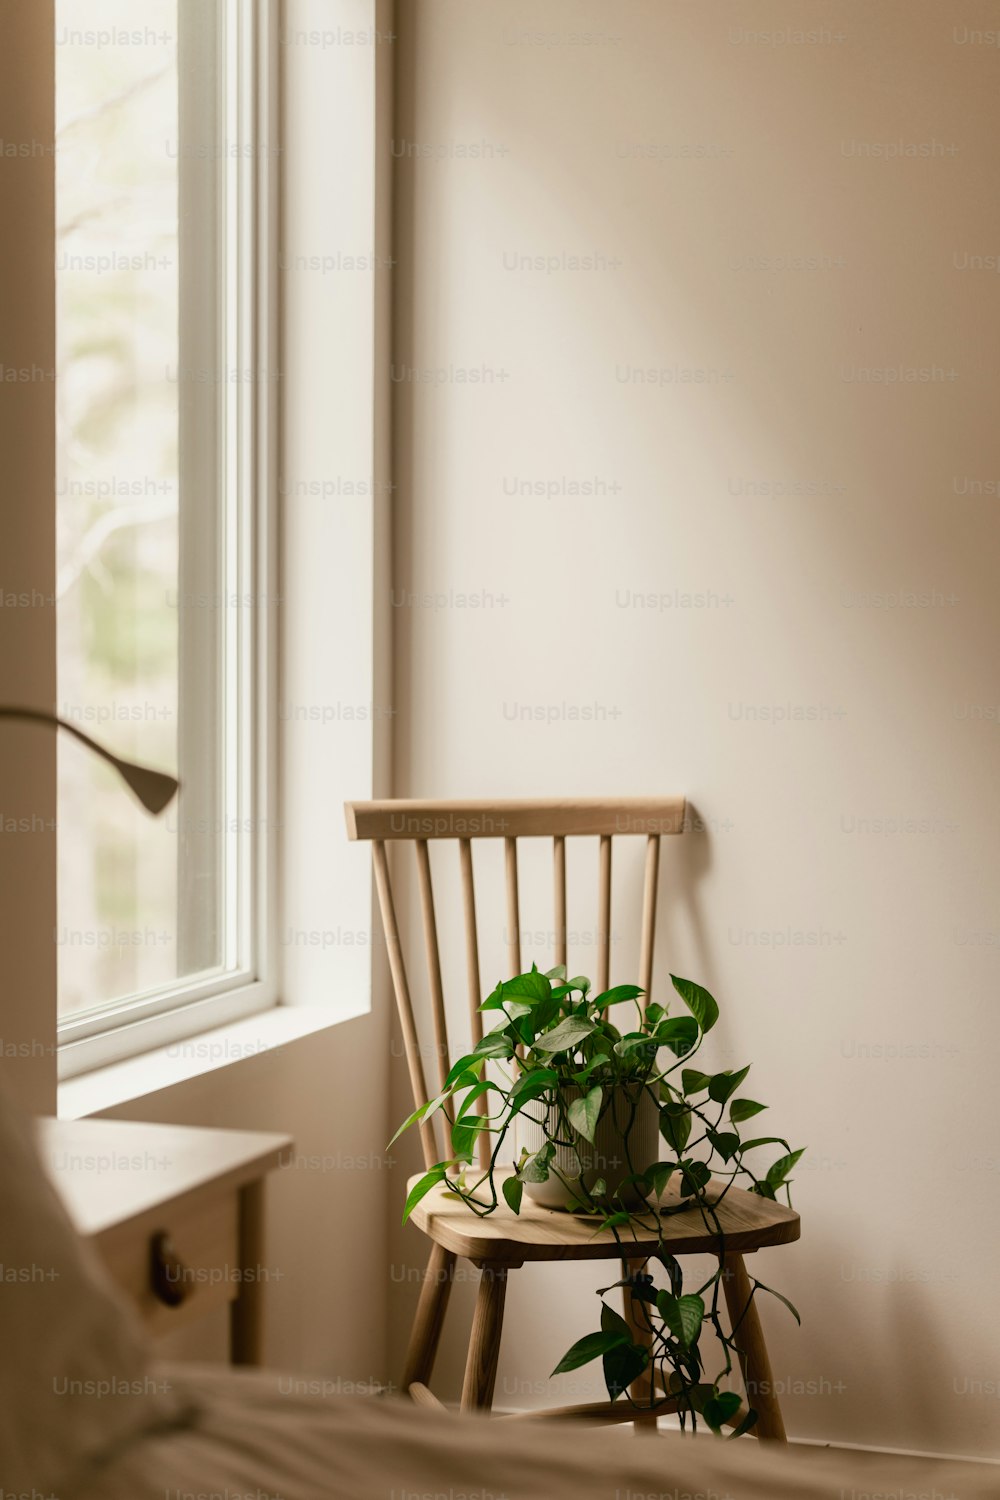 uma cadeira com um vaso de planta sentado em cima dela